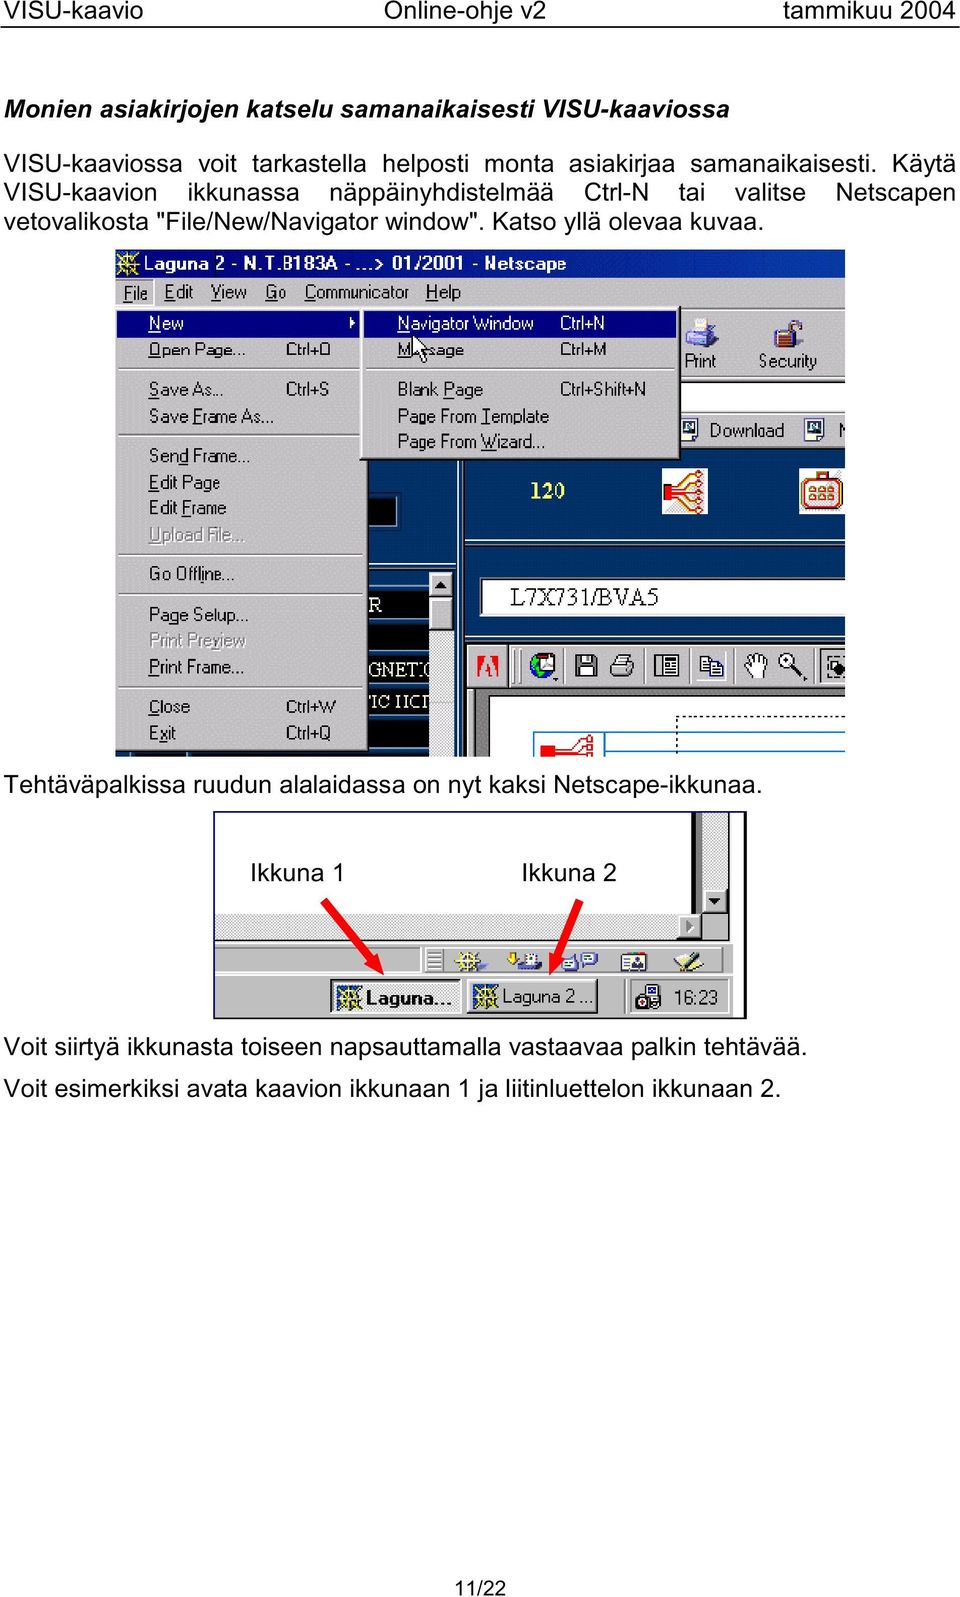 Käytä VISU-kaavion ikkunassa näppäinyhdistelmää Ctrl-N tai valitse Netscapen vetovalikosta "File/New/Navigator window".